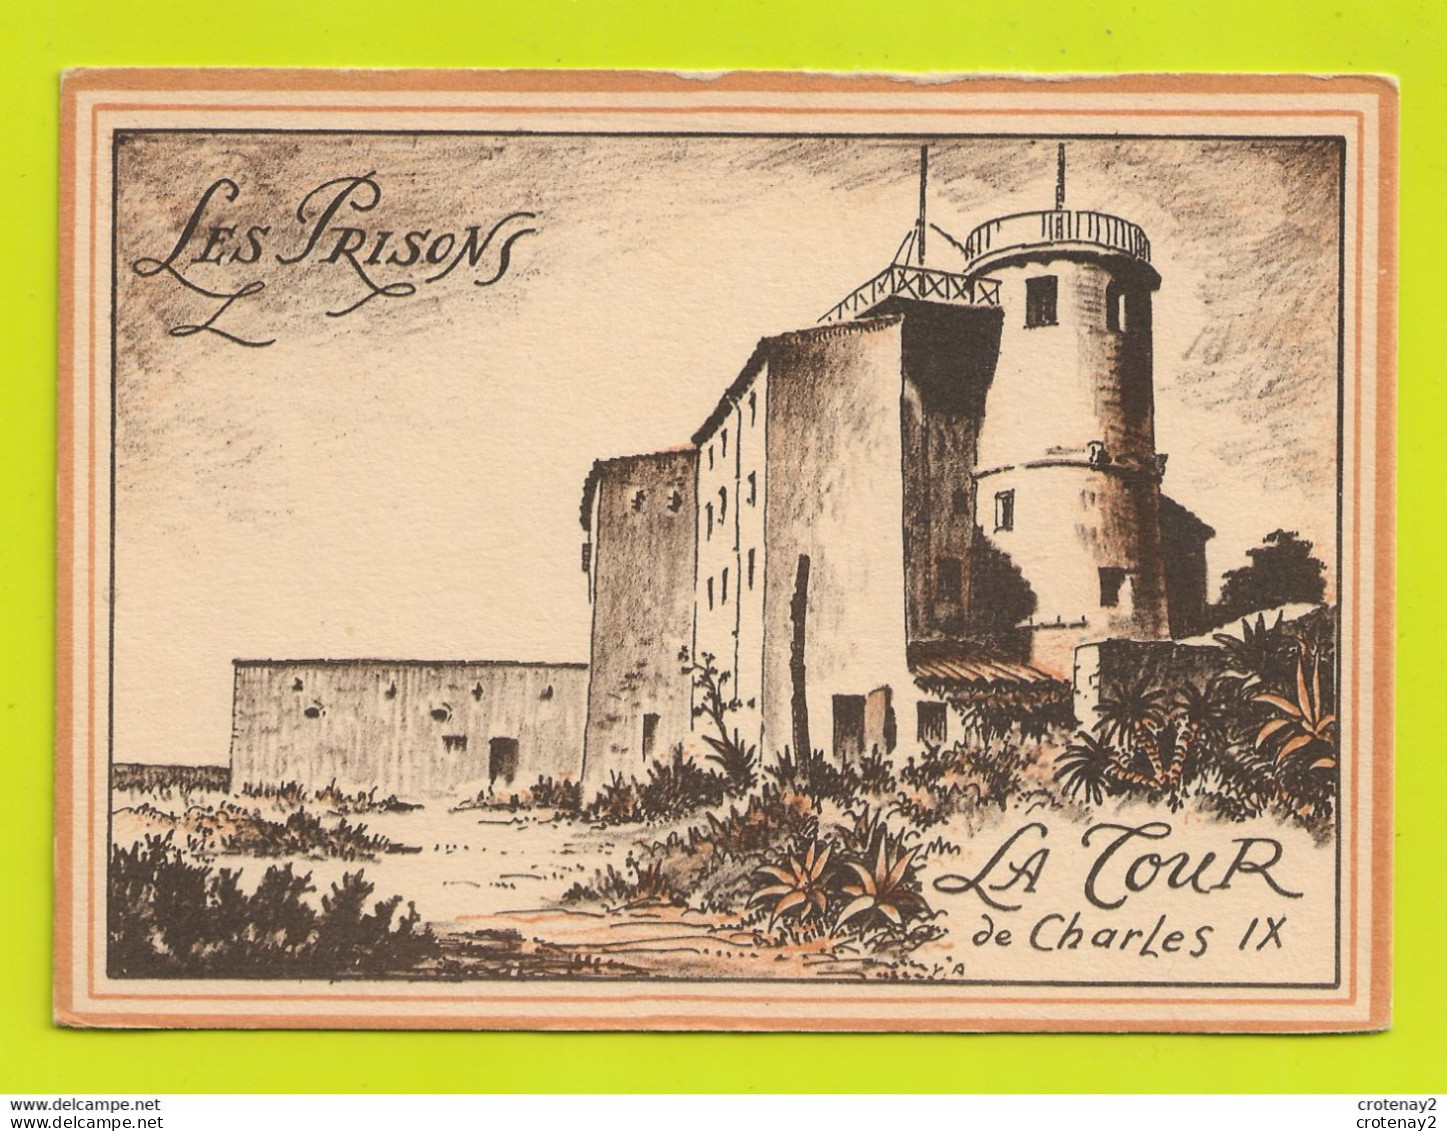 06 CANNES Iles De Lérins Ile Sainte Marguerite Le Fort Les Prisons La Tour De Charles IX Illustrateur ? VOIR DOS - Cannes